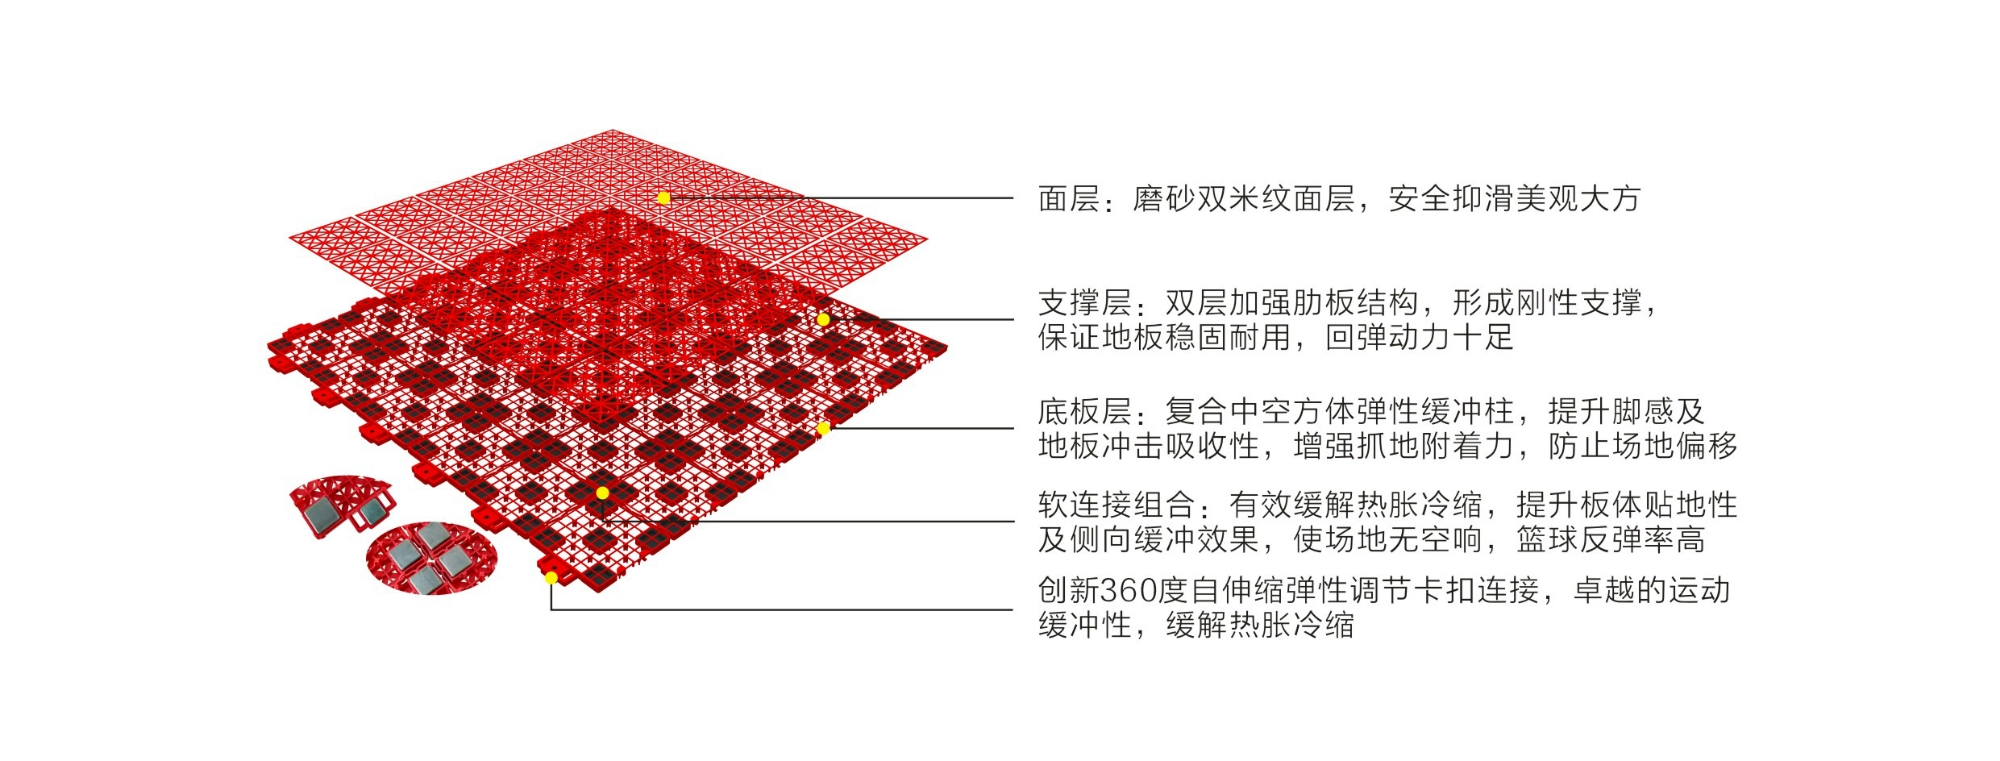 英利奥弹性软连接二代悬浮式拼装地板-结构图